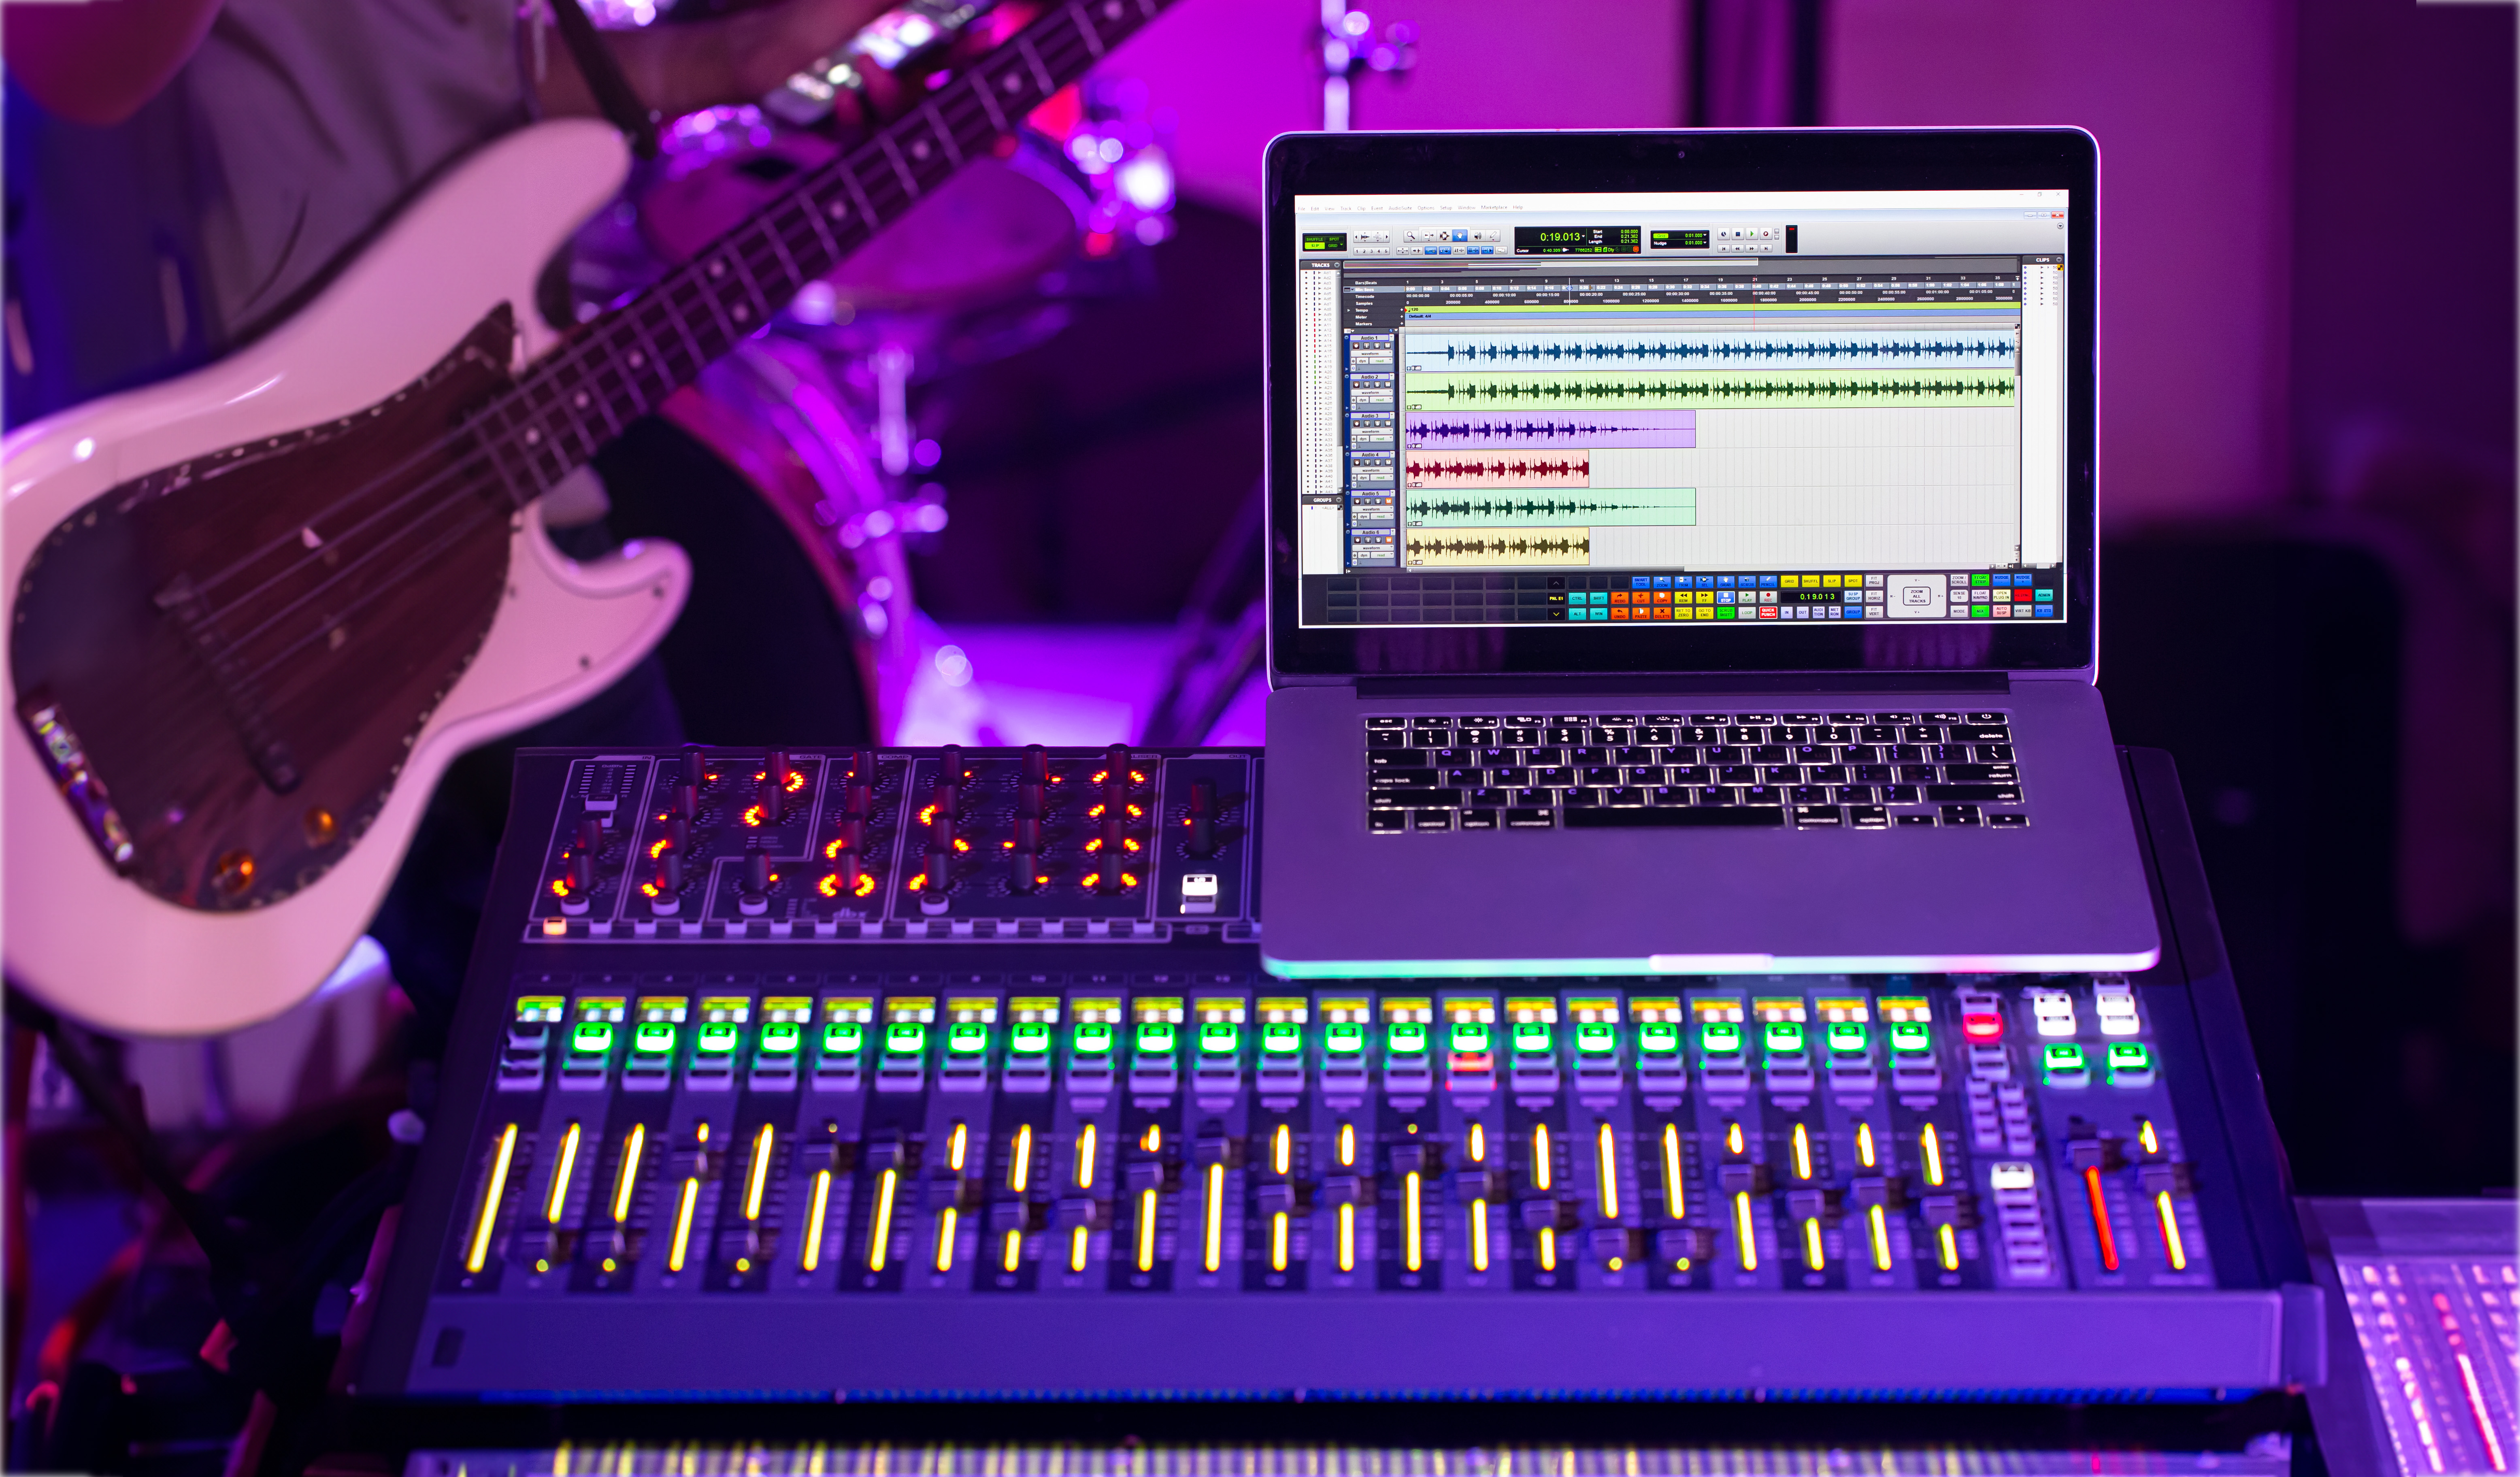 table-mixage-numerique-dans-studio-enregistrement-ordinateur-pour-enregistrer-musique-fond-homme-guitare-basse-concept-creativite-show-business